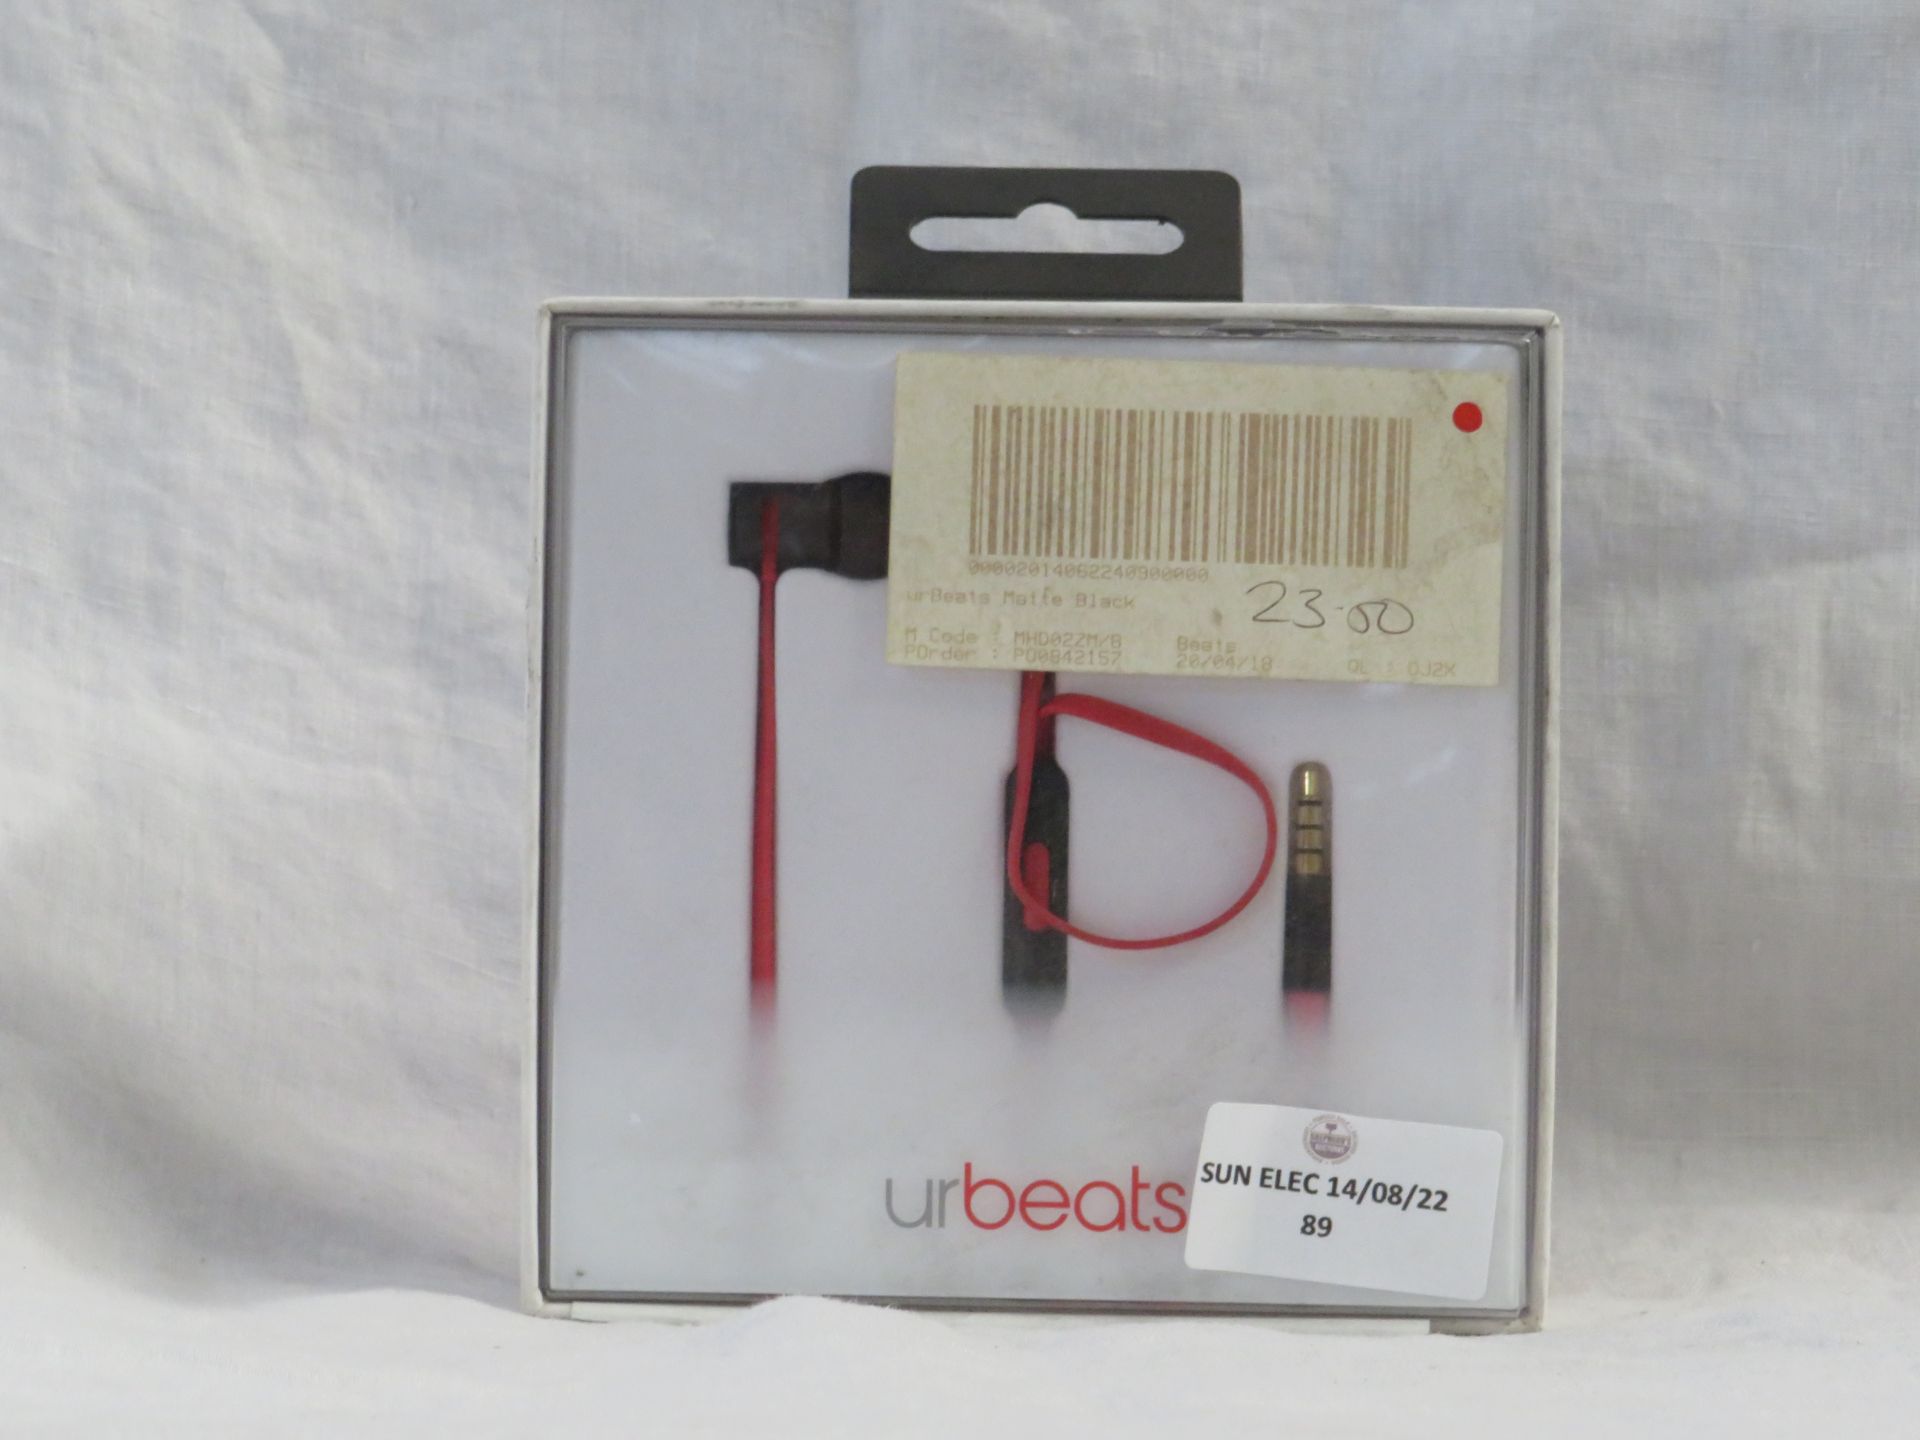 1x UrBeats 3.5mm Jack Earphones - Unchecked Customer Return